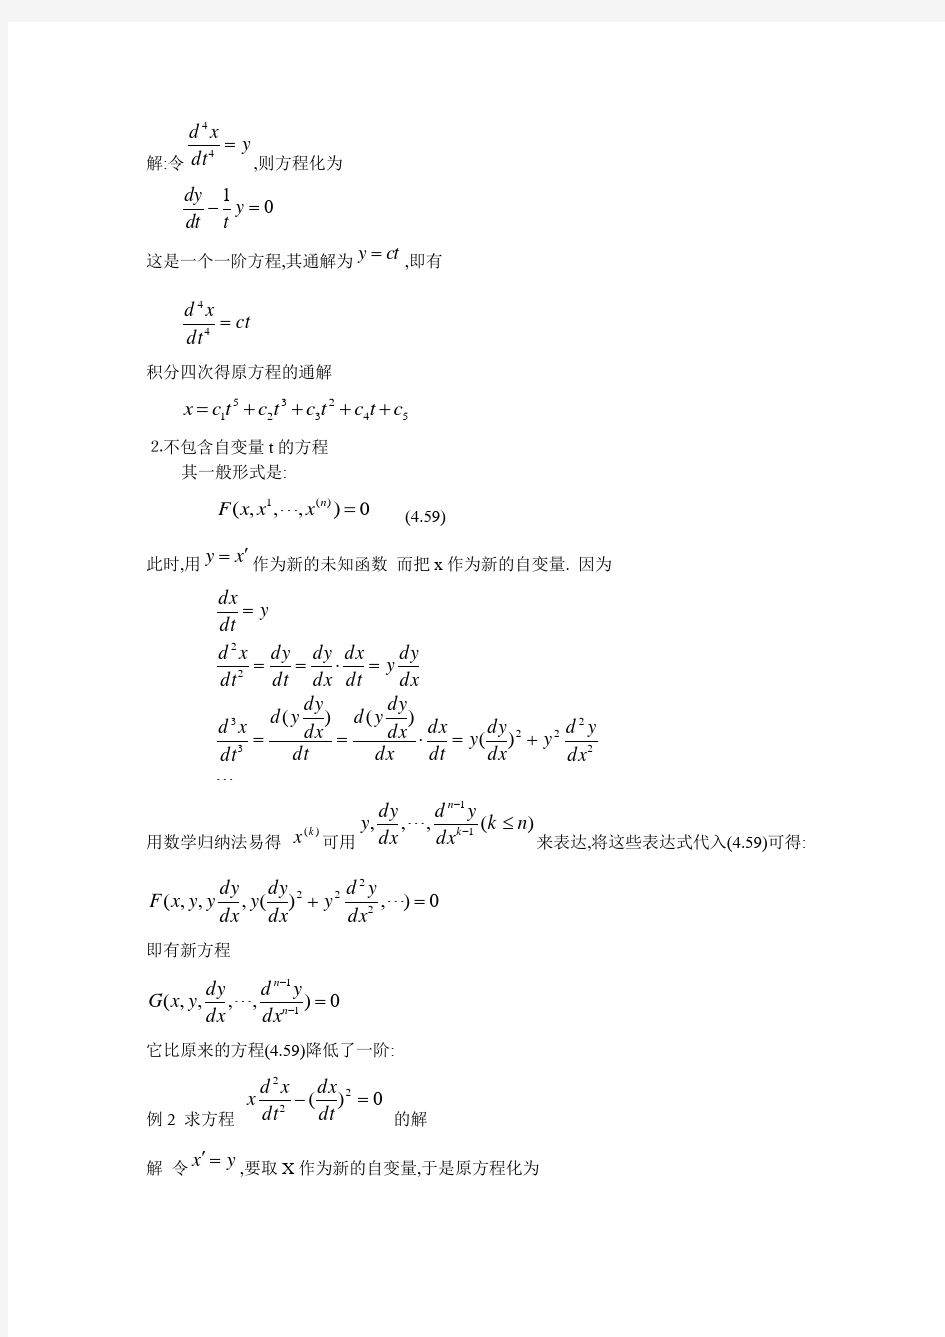 (完整版)高阶微分方程的降阶和幂级数解法